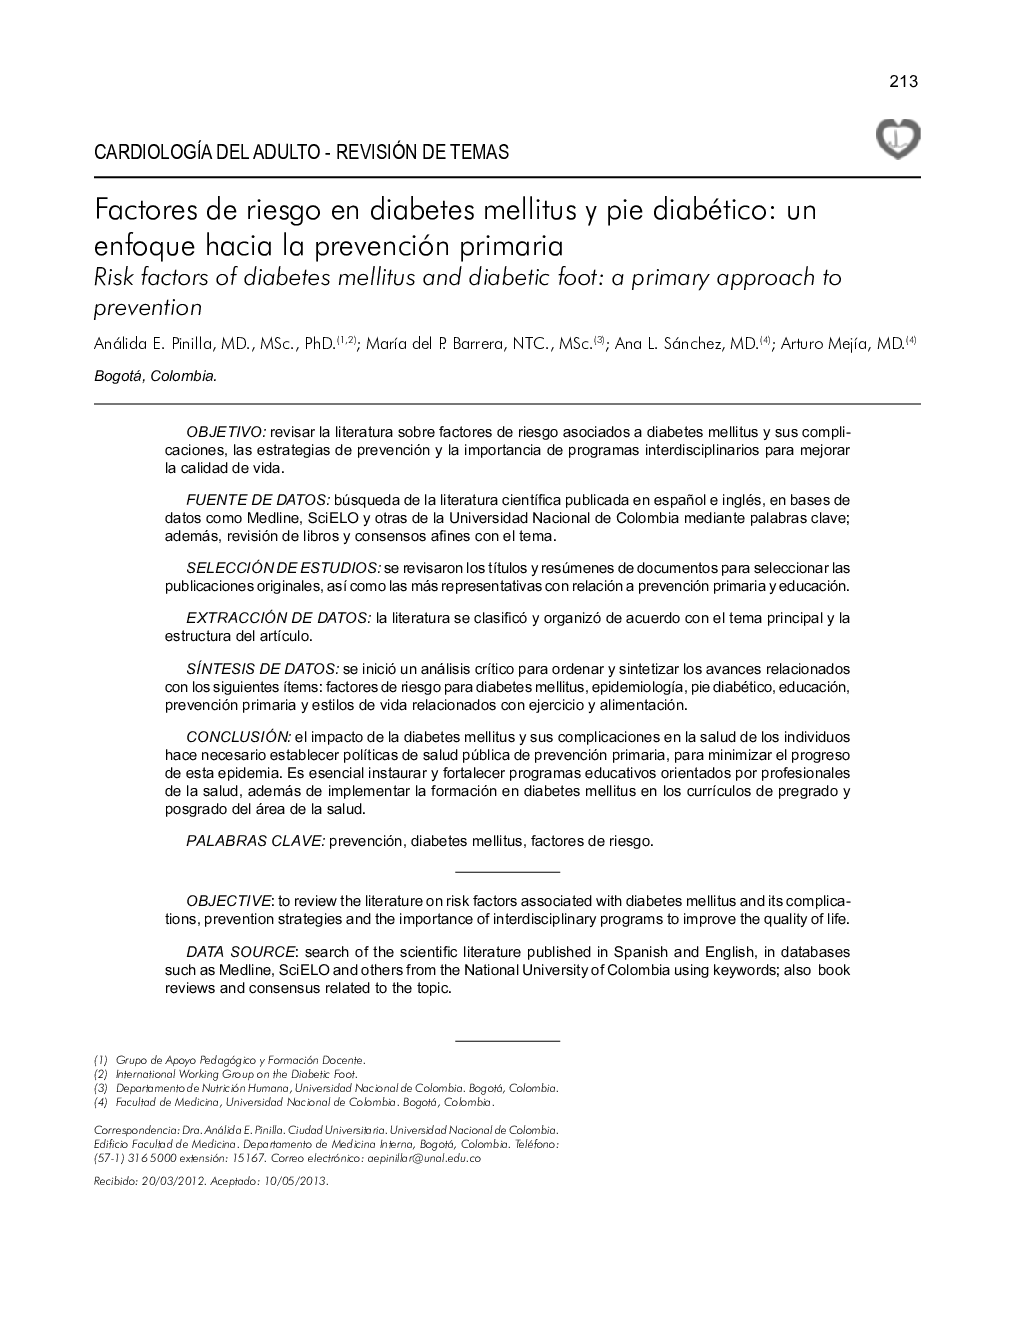 Factores de riesgo en diabetes mellitus y pie diabético: un enfoque hacia la prevención primaria